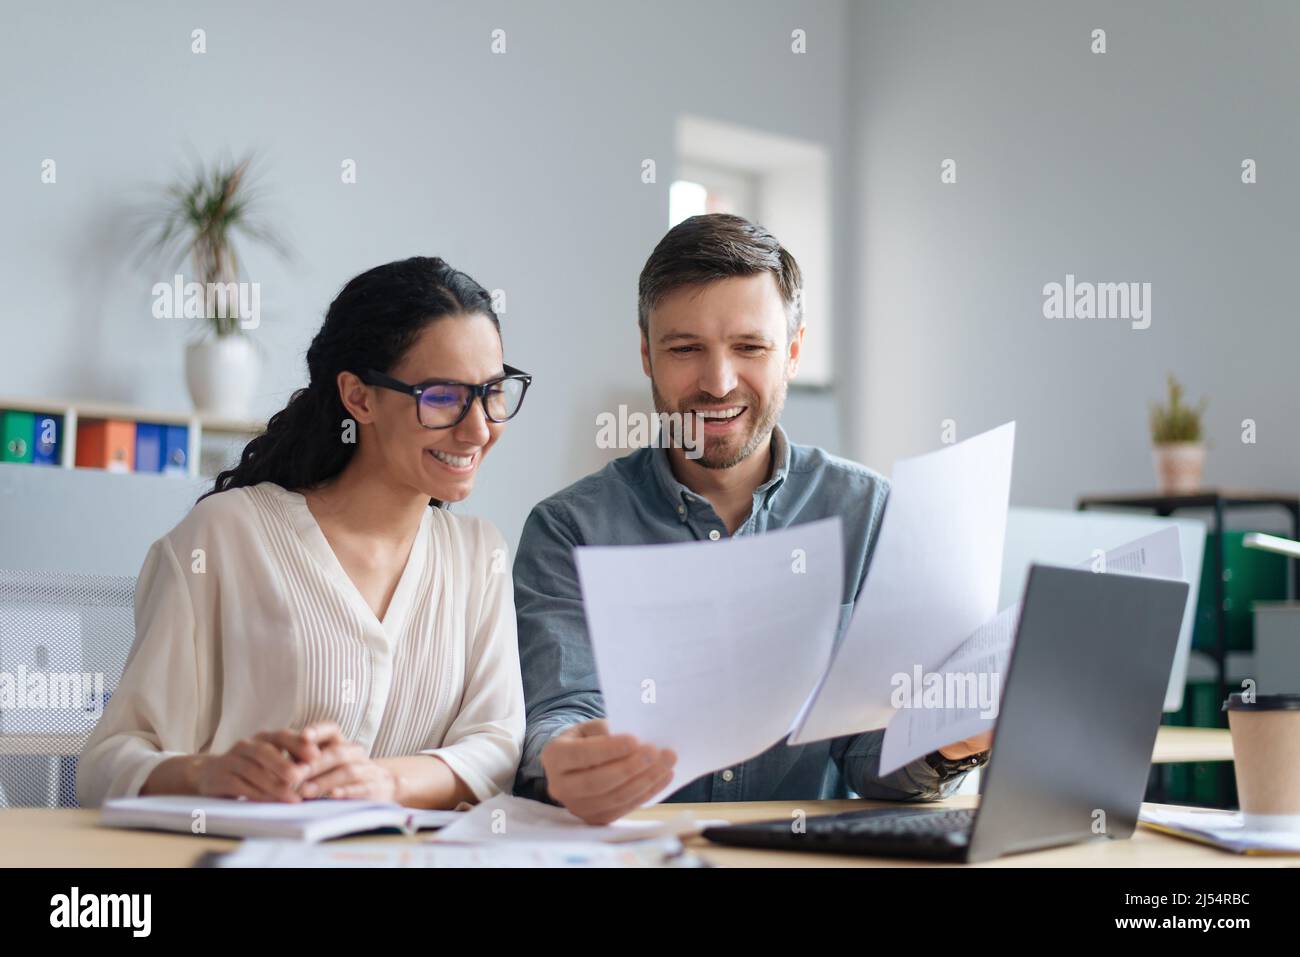 Allegri dipendenti aziendali maschili e femminili che guardano attraverso documenti, collaborano, usano il laptop in un ufficio moderno Foto Stock